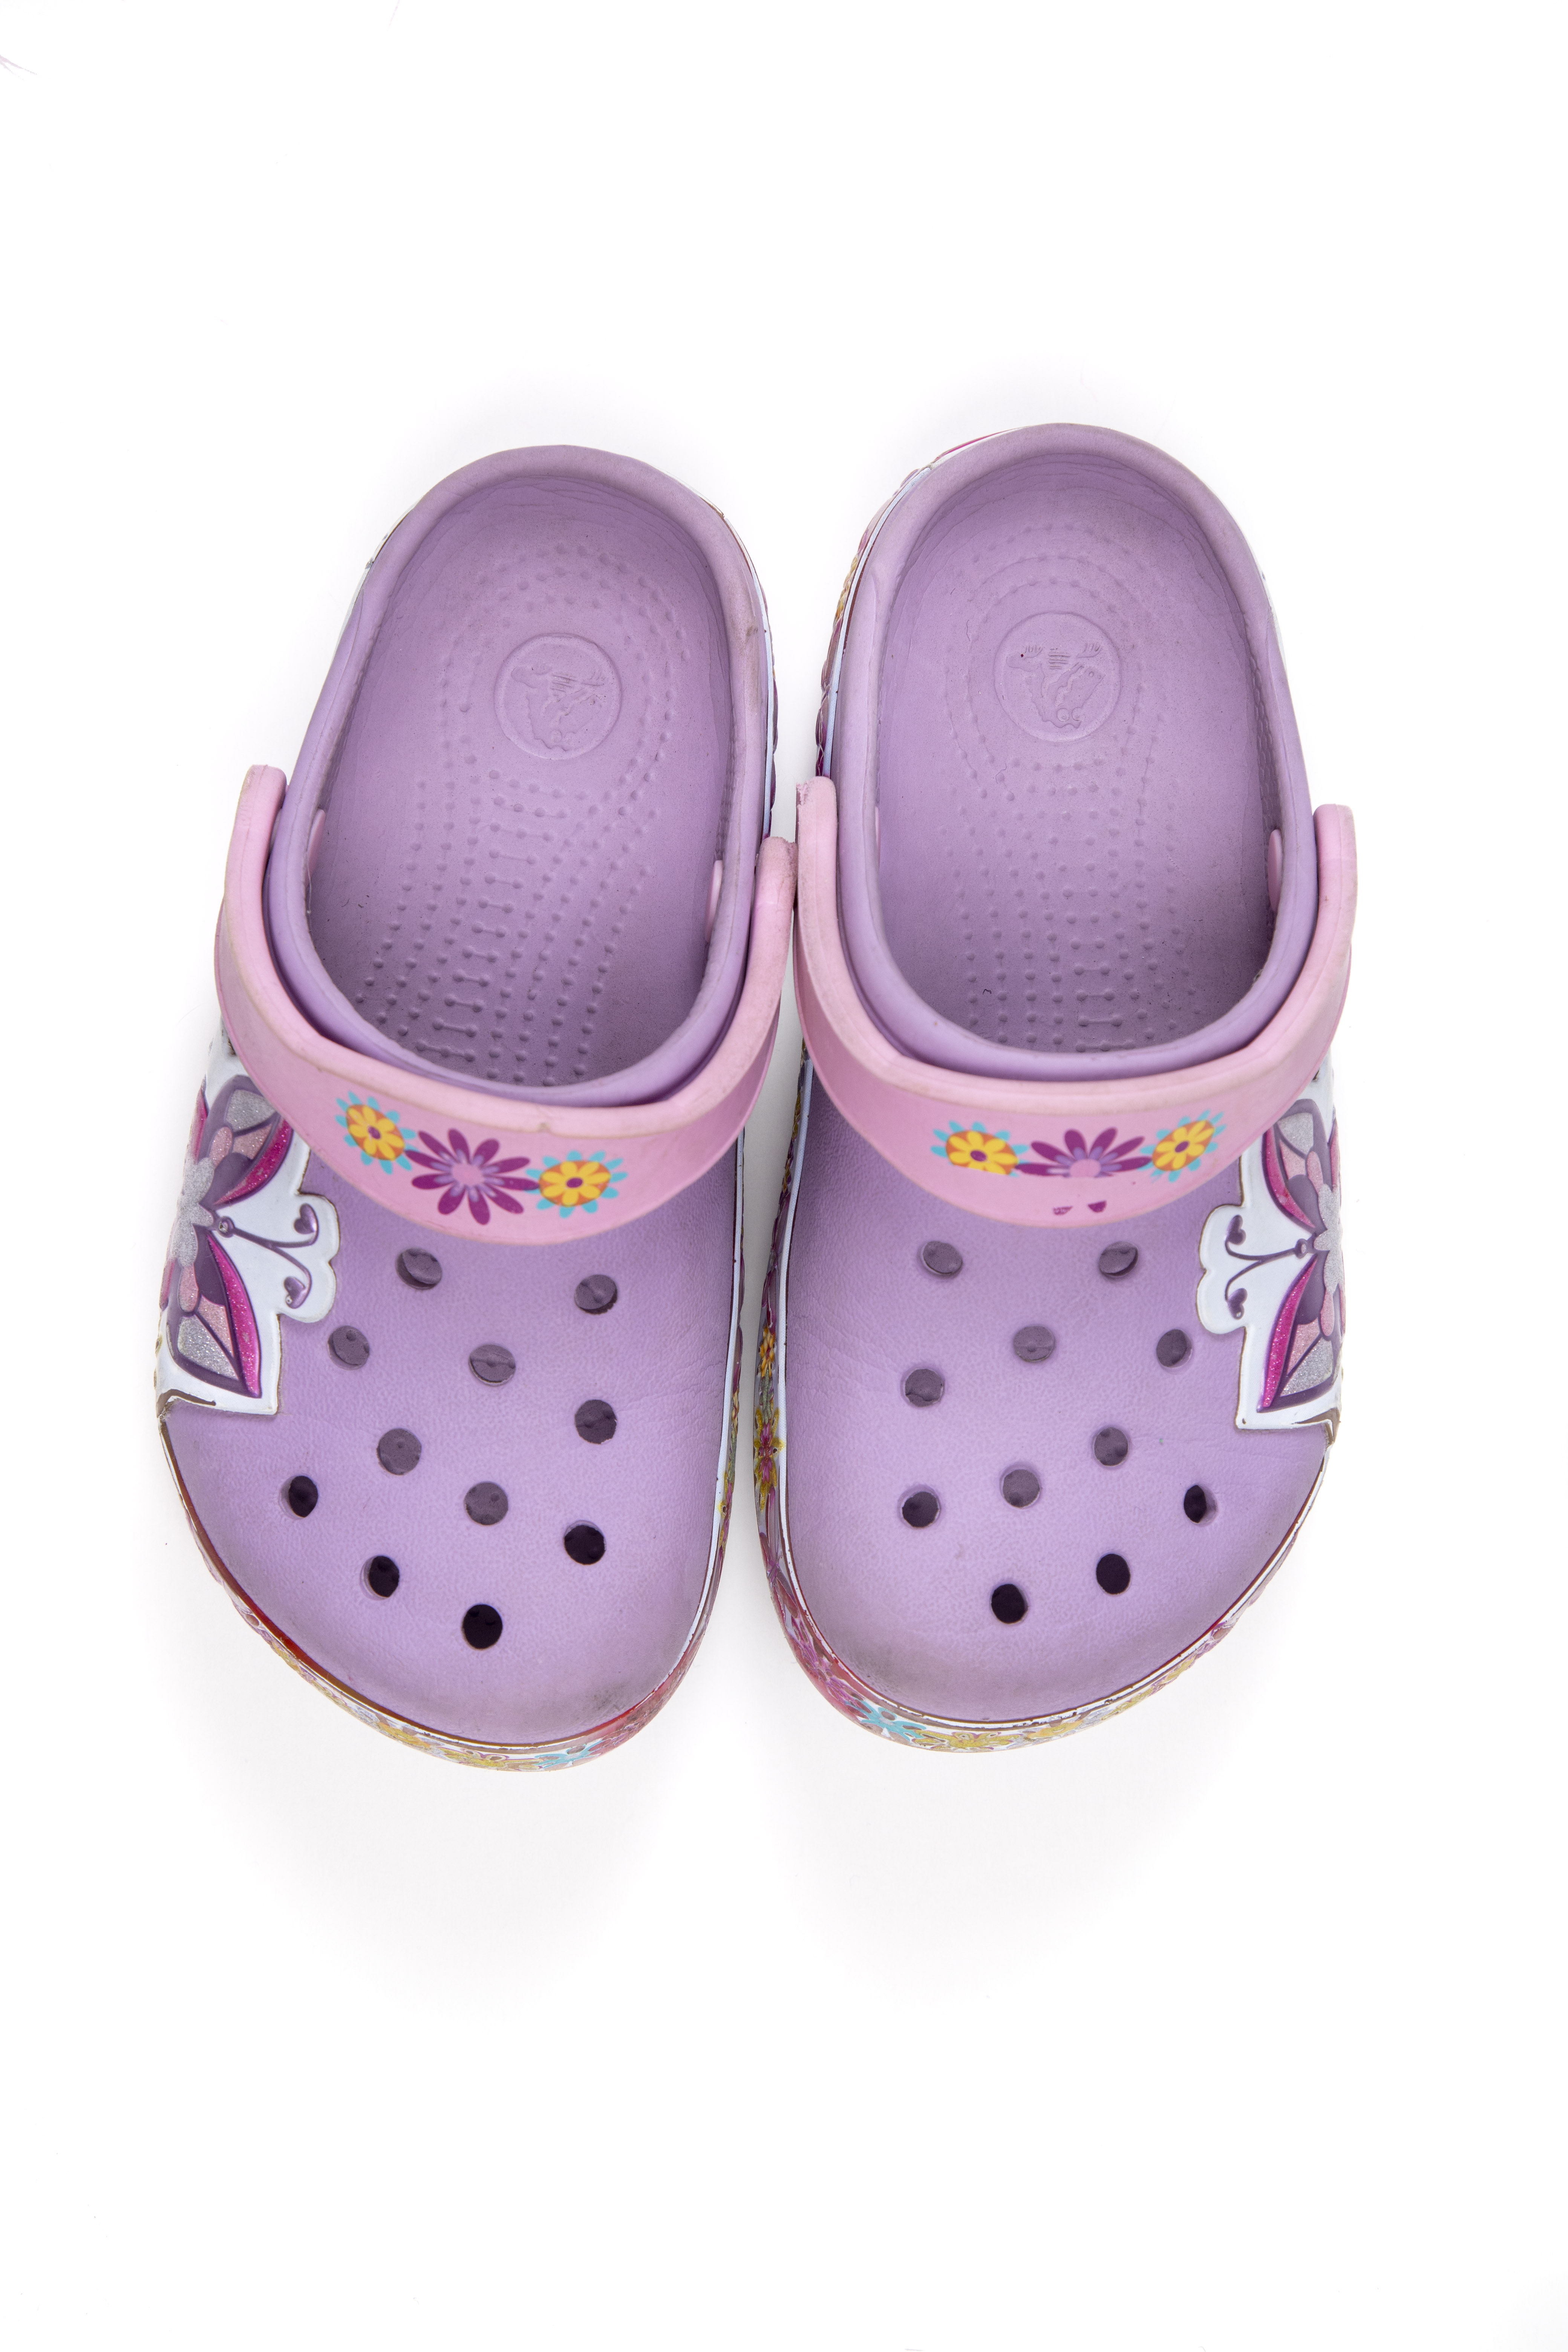 Crocs lilas con flores. Talla 10 - 11 americana - Crocs